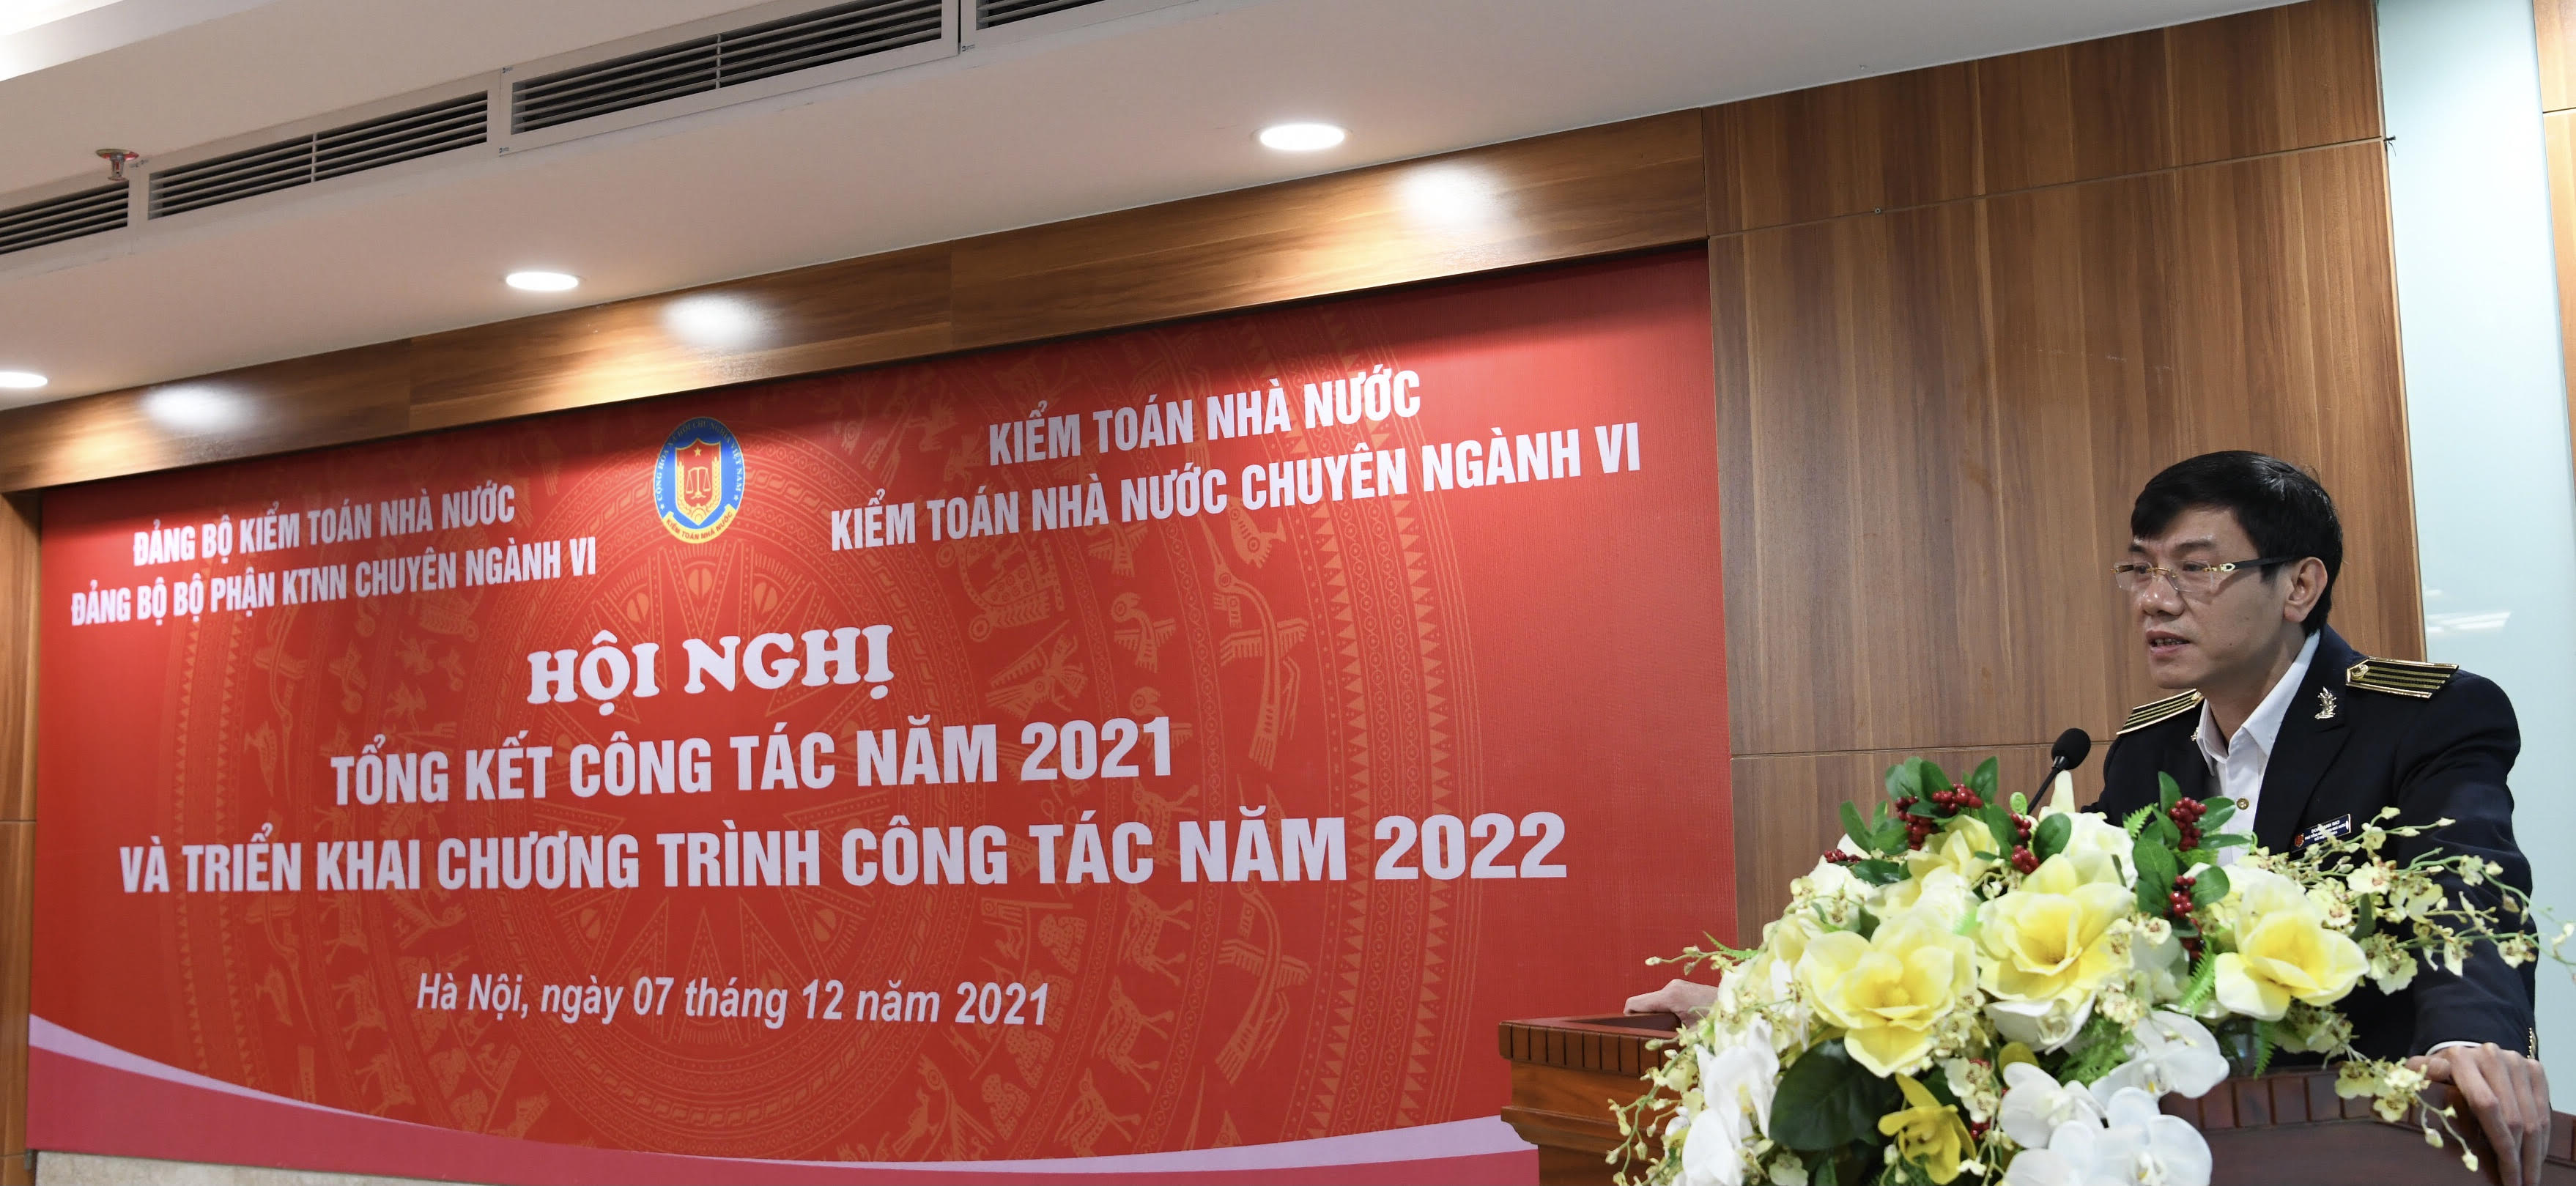 KTNN chuyên ngành VI hoàn thành toàn diện kế hoạch công tác năm 2021